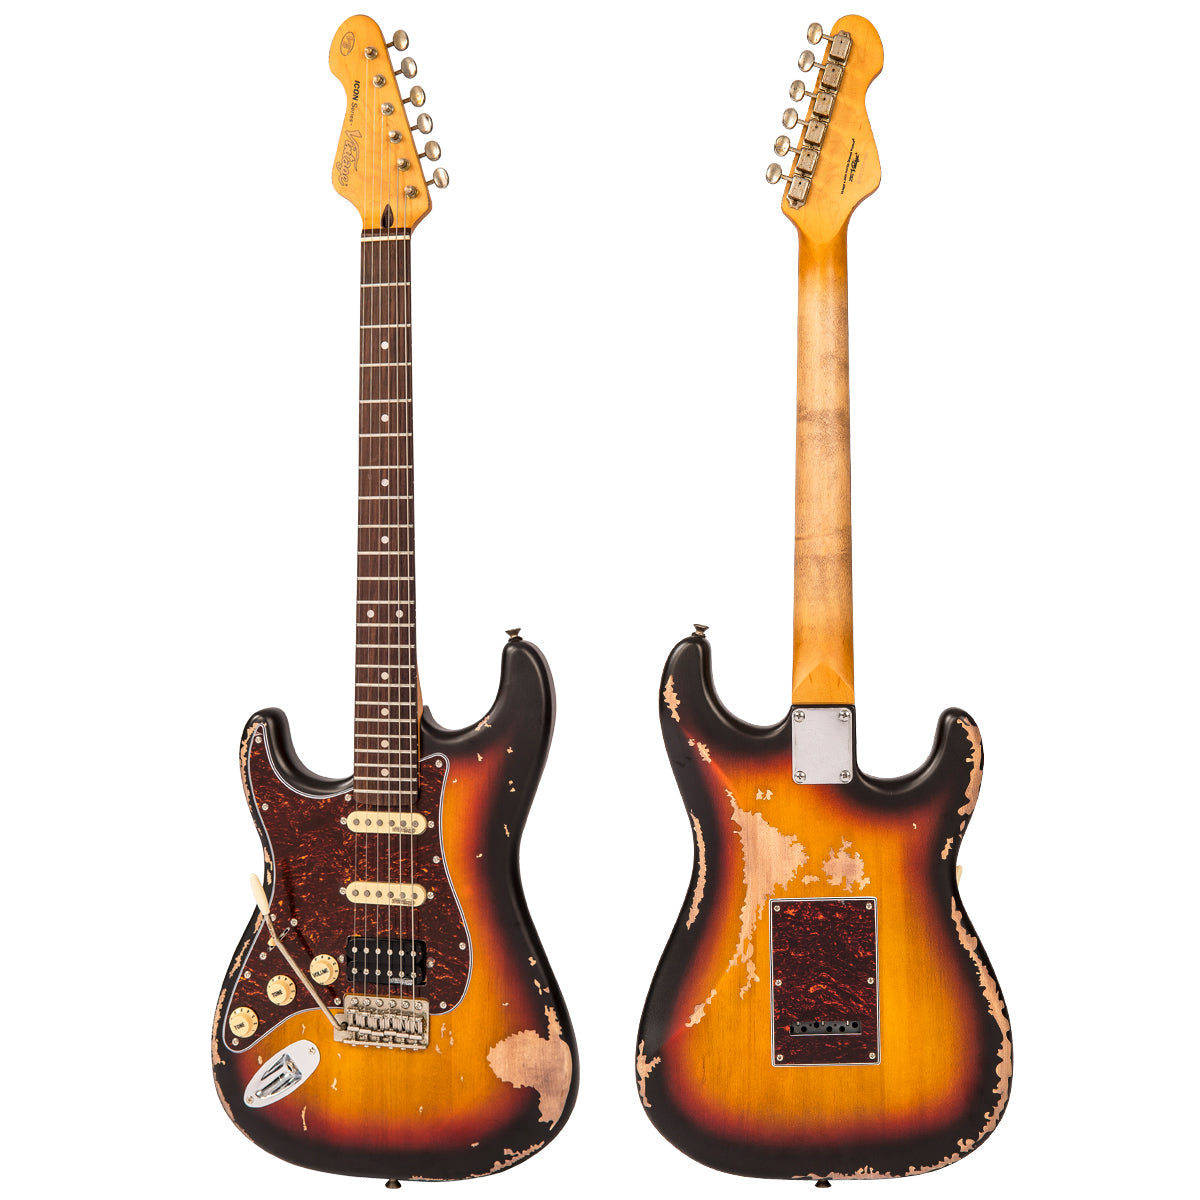 Vintage V6H ICON HSS Electric Guitar ~ Left Hand Distressed Sunburst, Left Hand Electric Guitars for sale at Richards Guitars.